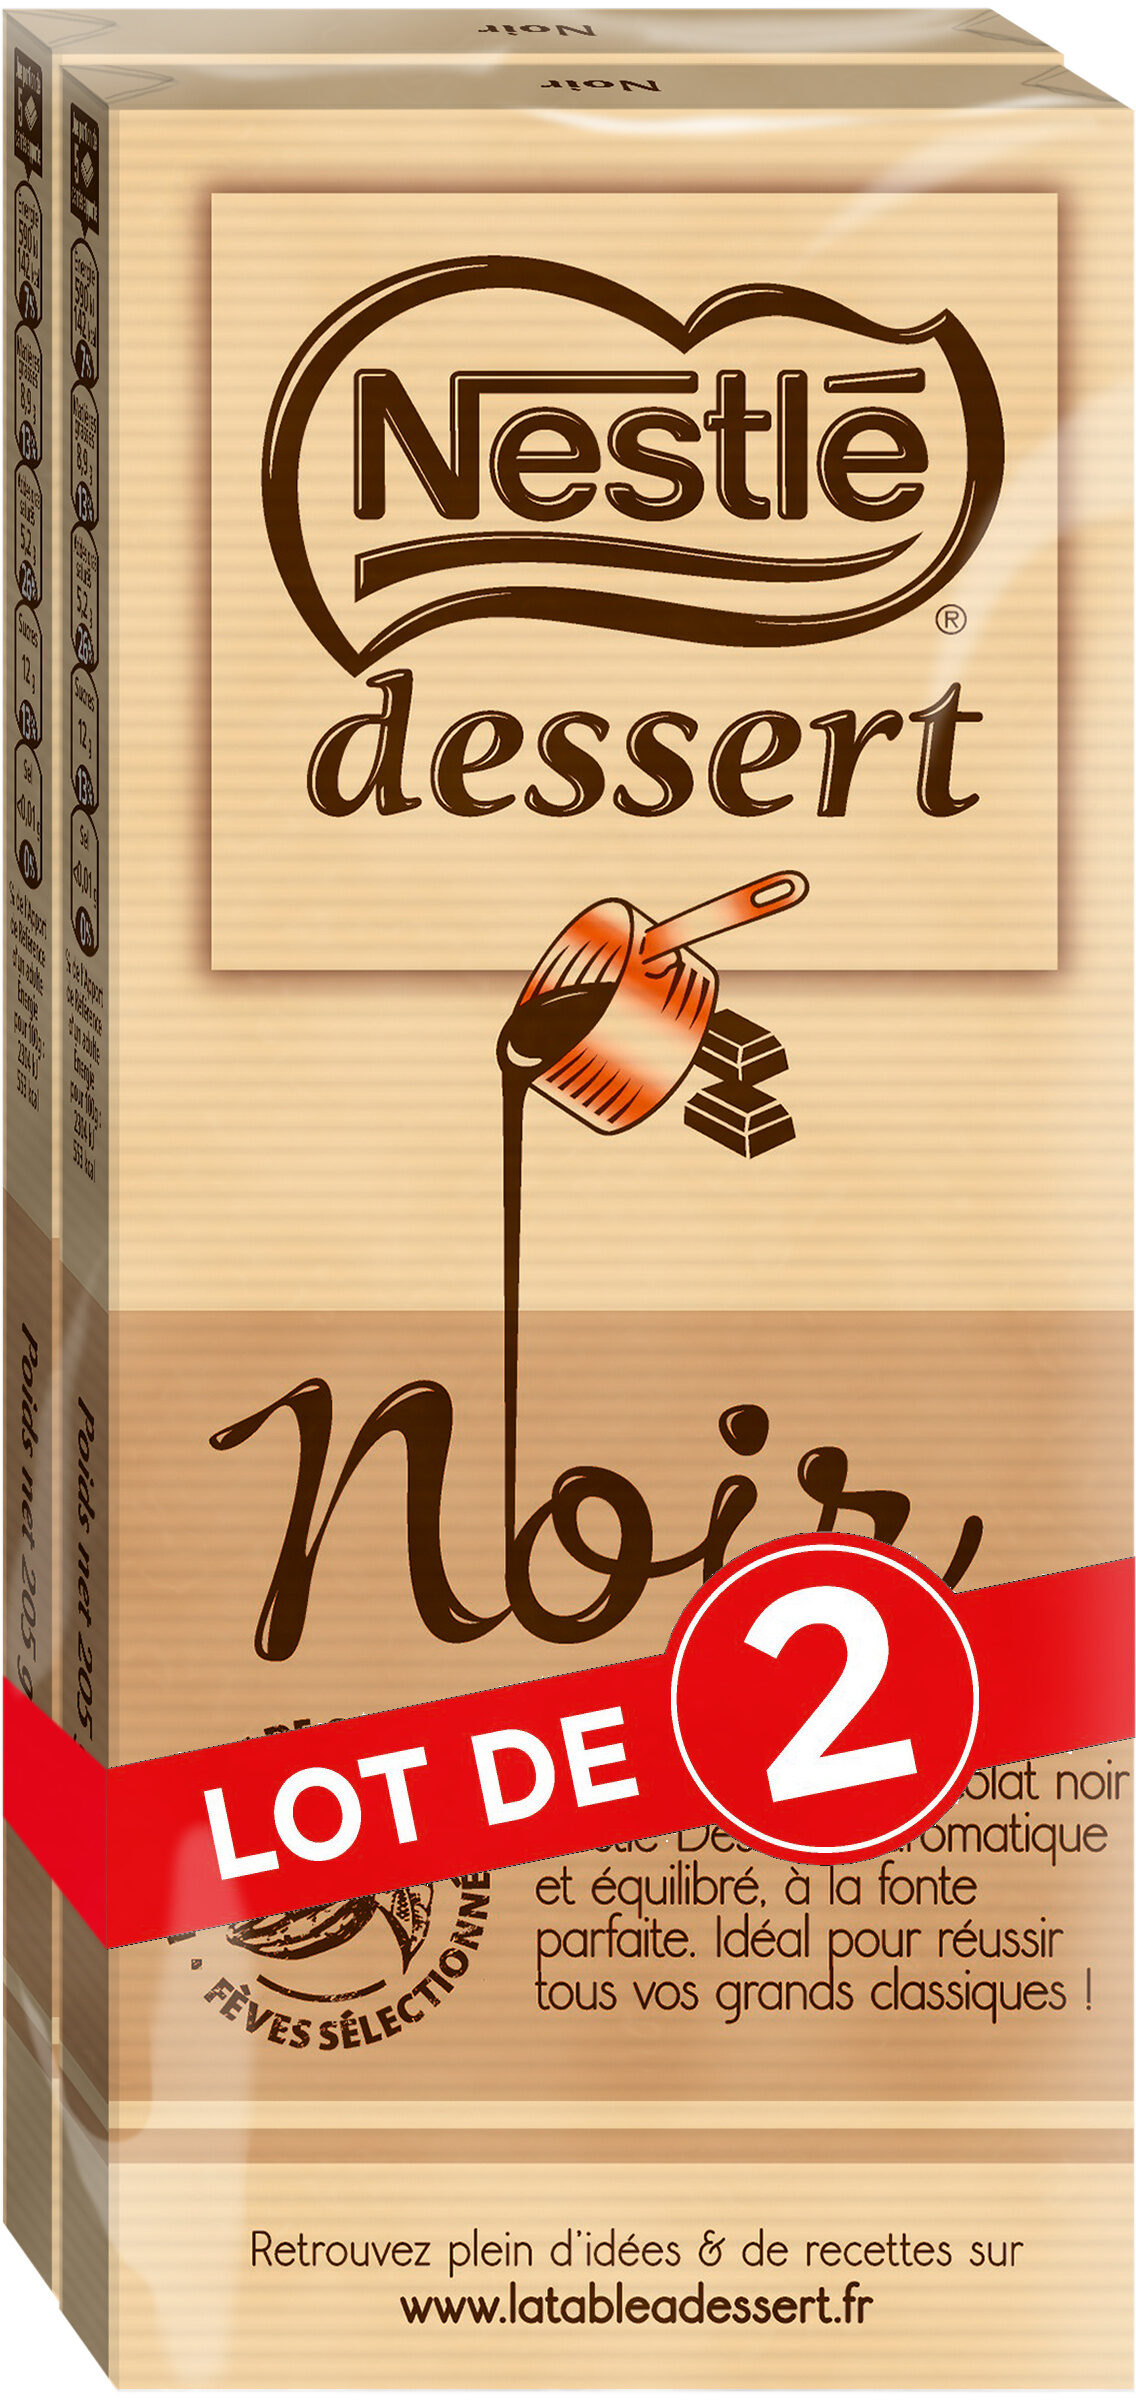 NESTLE DESSERT Chocolat Noir lot de 2x205g - Produkt - fr